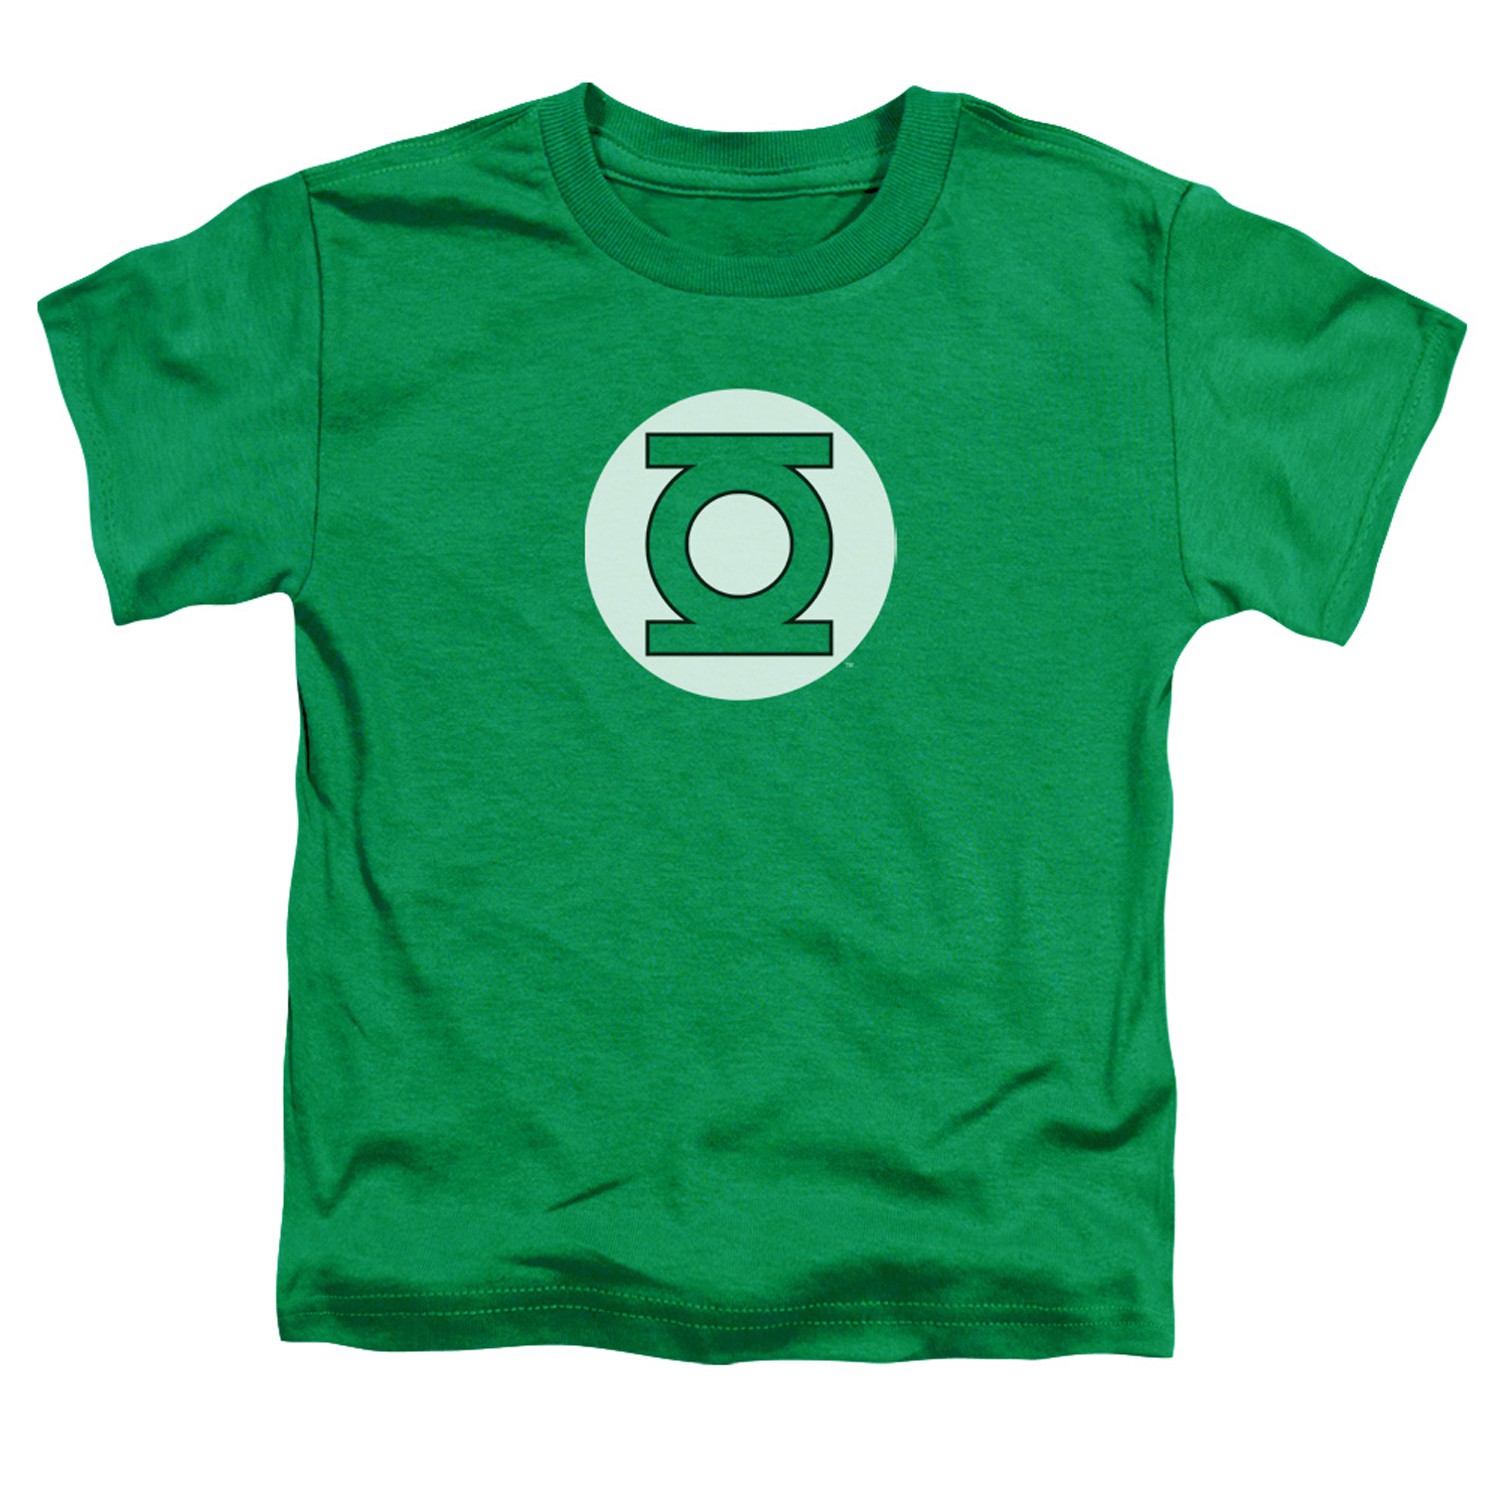 Green Lantern Logo Toddlers Tshirt